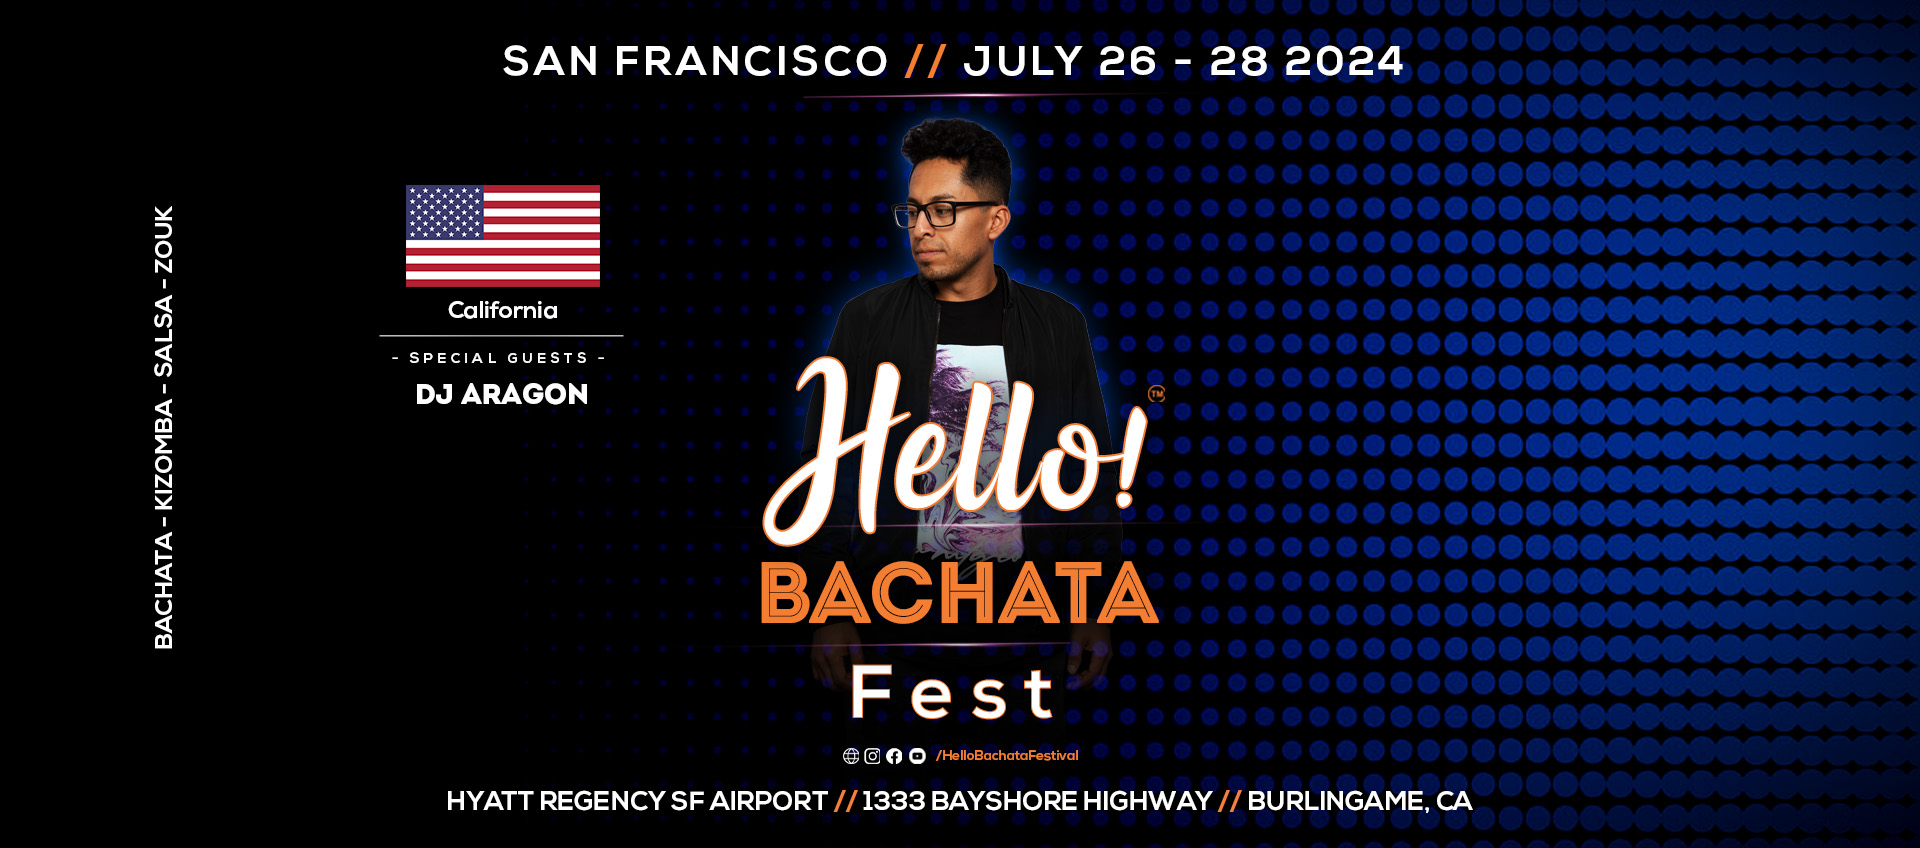 Hello! Bachata Dance Festival - Bachata - DJ Aragon